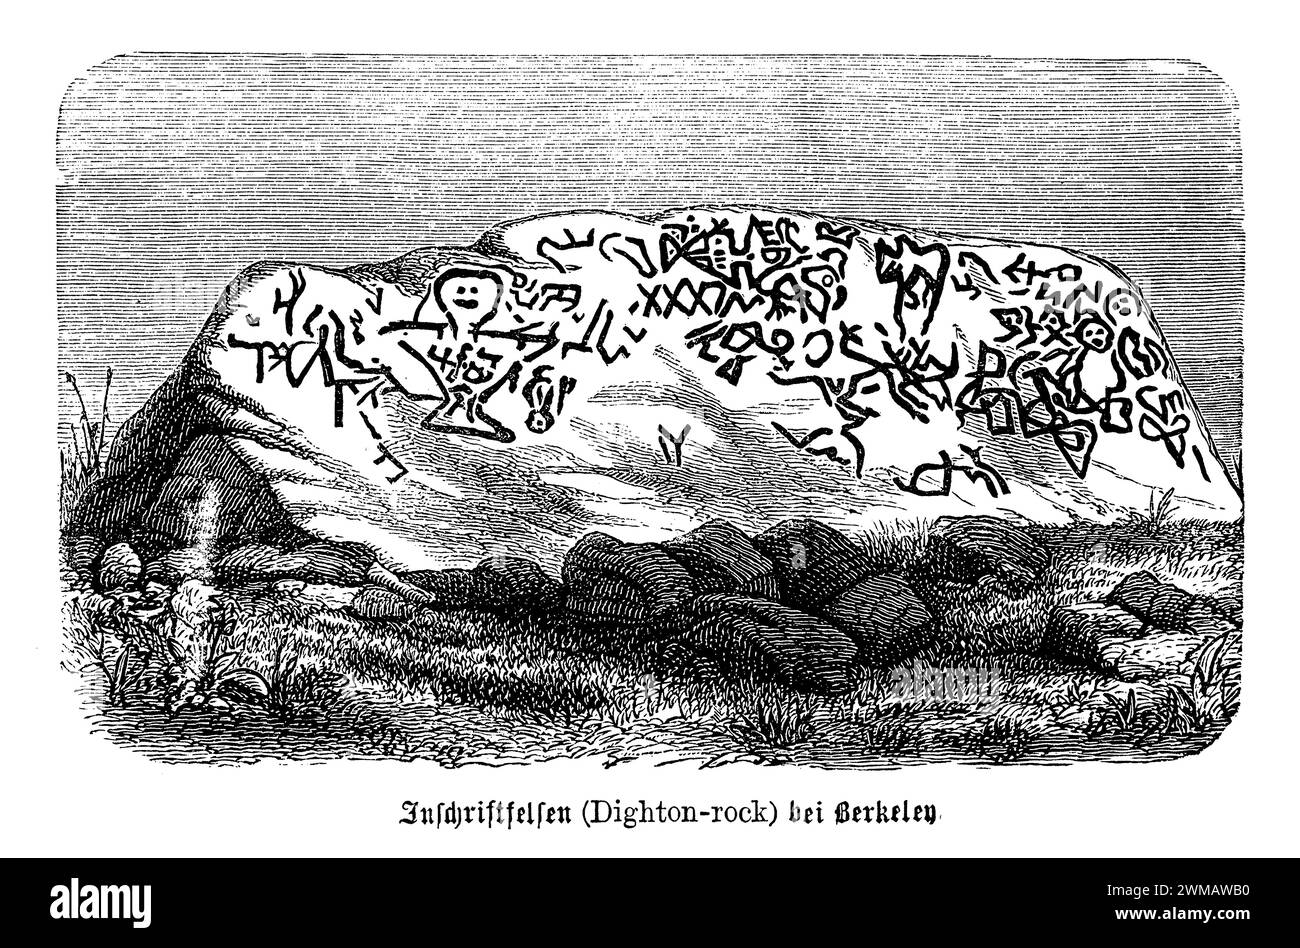 Die Petroglyphen auf dem Dighton Rock in Berkley, Massachusetts, sind eine Sammlung mysteriöser Inschriften und Schnitzereien, die auf einem 40 Tonnen schweren Felsbrocken am Ufer des Taunton River gefunden wurden. Diese Petroglyphen faszinieren Archäologen, Historiker und Enthusiasten seit Jahrhunderten mit Theorien über ihre Ursprünge, die von indianischen Stämmen bis zu nordischen Entdeckern reichen. Der Felsen weist eine komplexe Auswahl an Symbolen, Figuren und Inschriften auf, die im Laufe der Jahre verschiedenen Interpretationen unterzogen wurden. Einige Wissenschaftler vermuten, dass die Markierungen indigener amerikanischer Herkunft sind Stockfoto